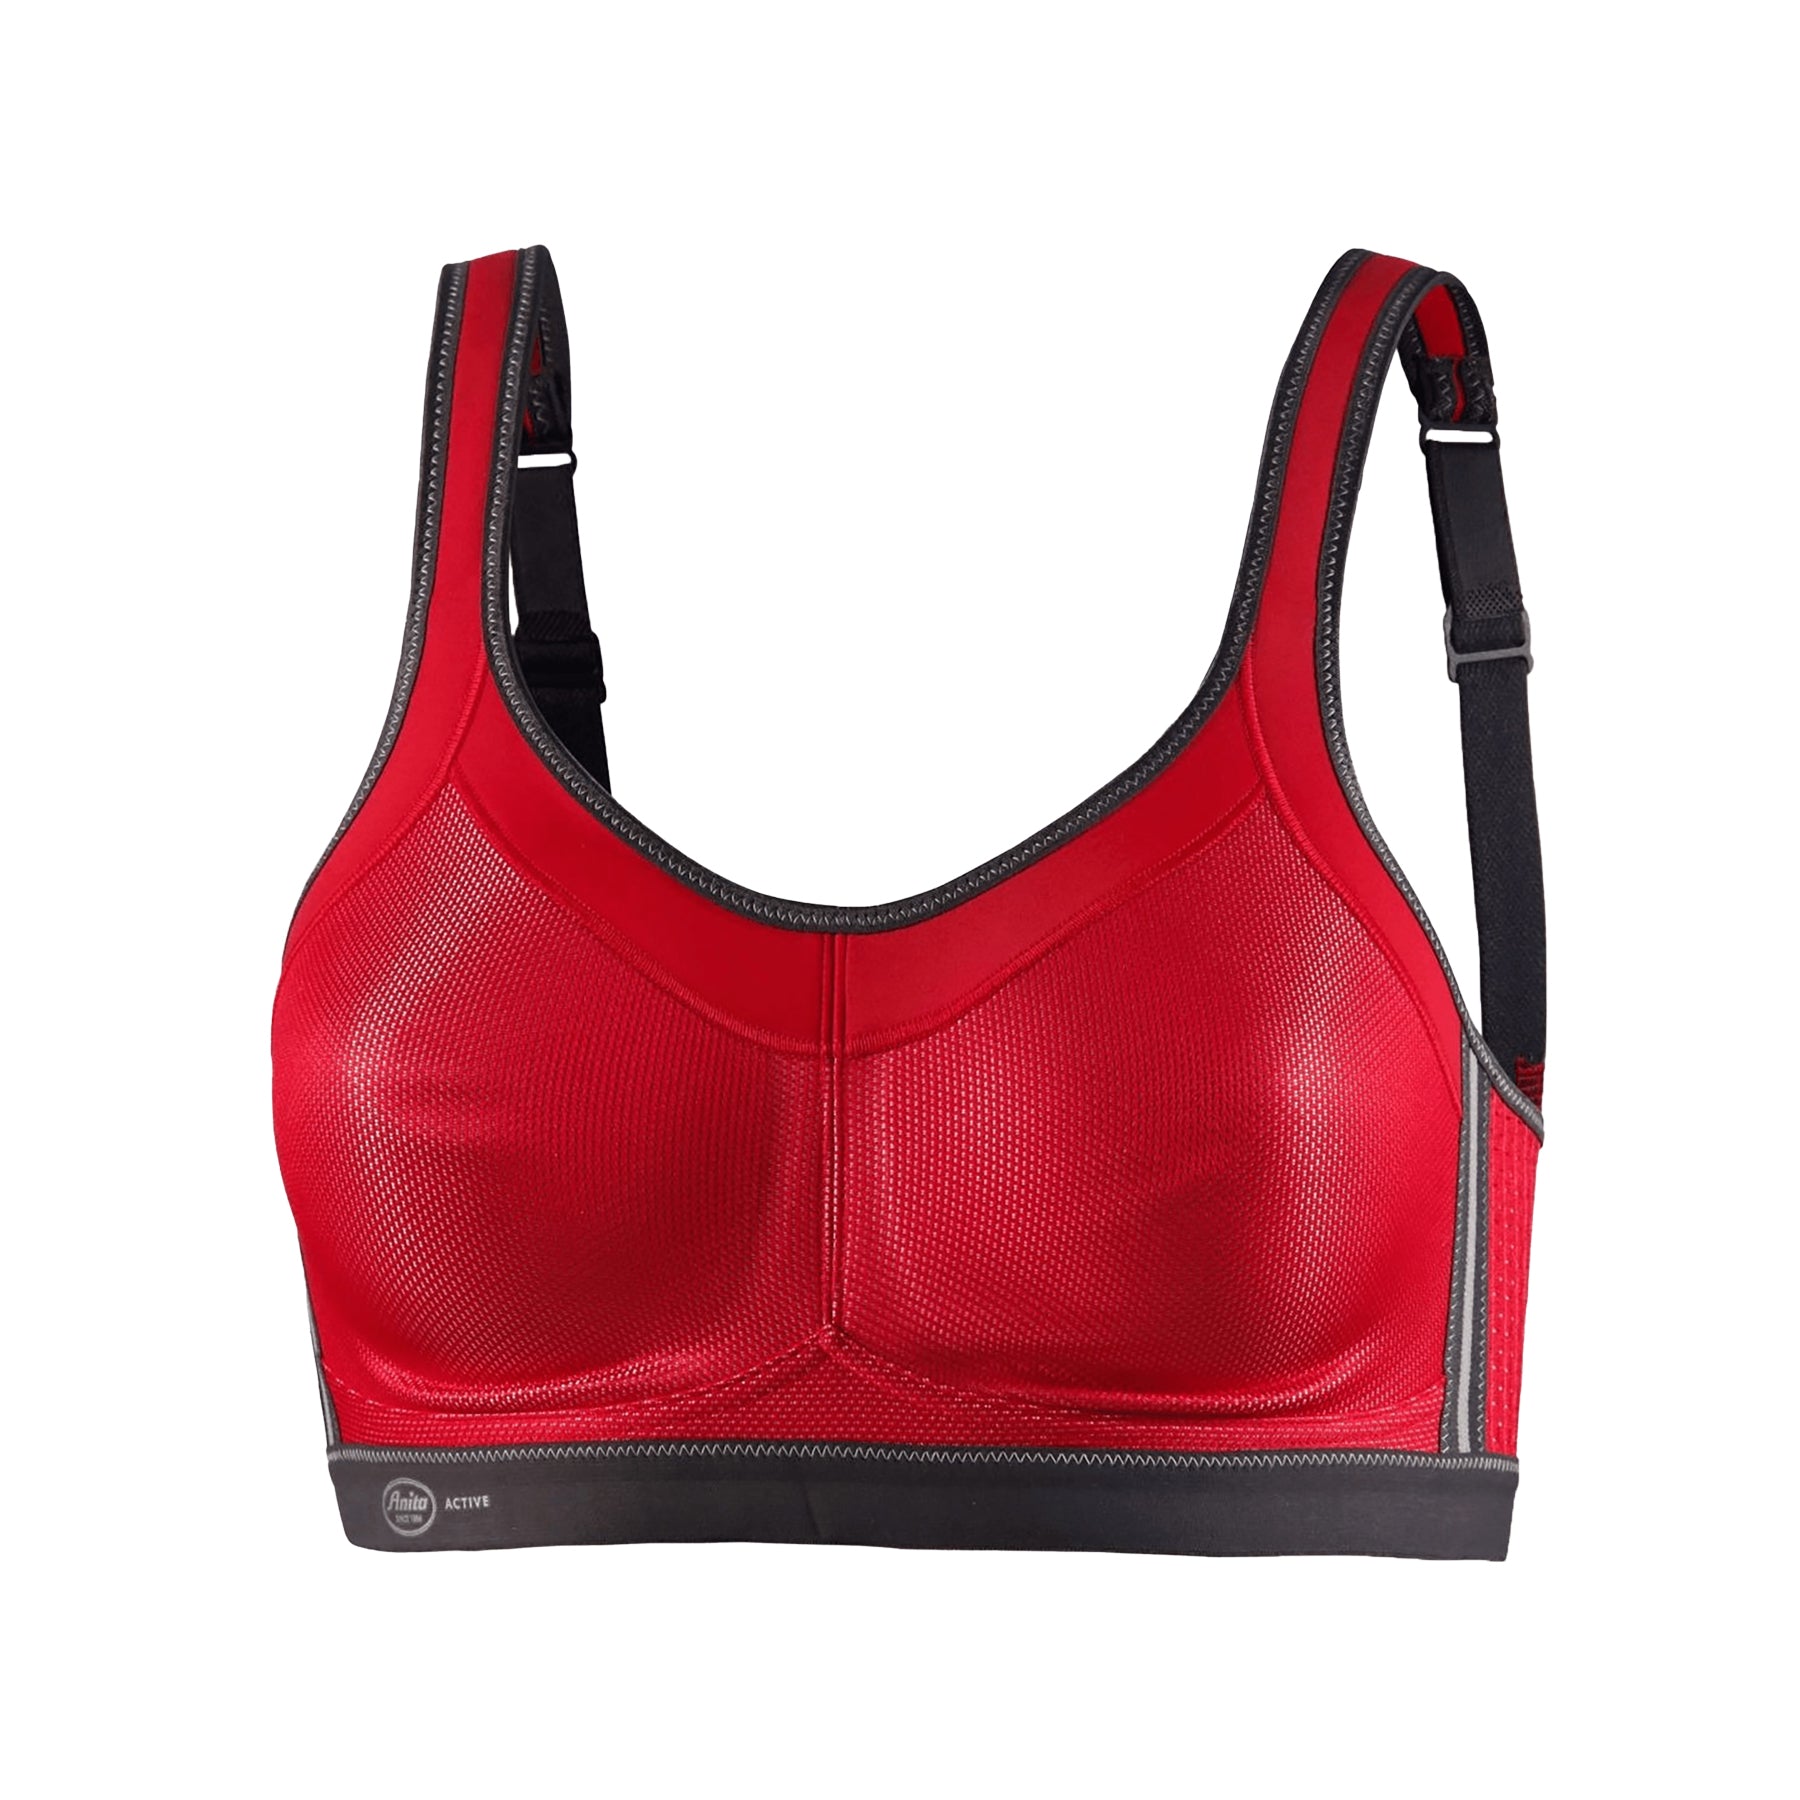 HKMX The Nadi sports bra level 1 for €24.99 - Padded bras